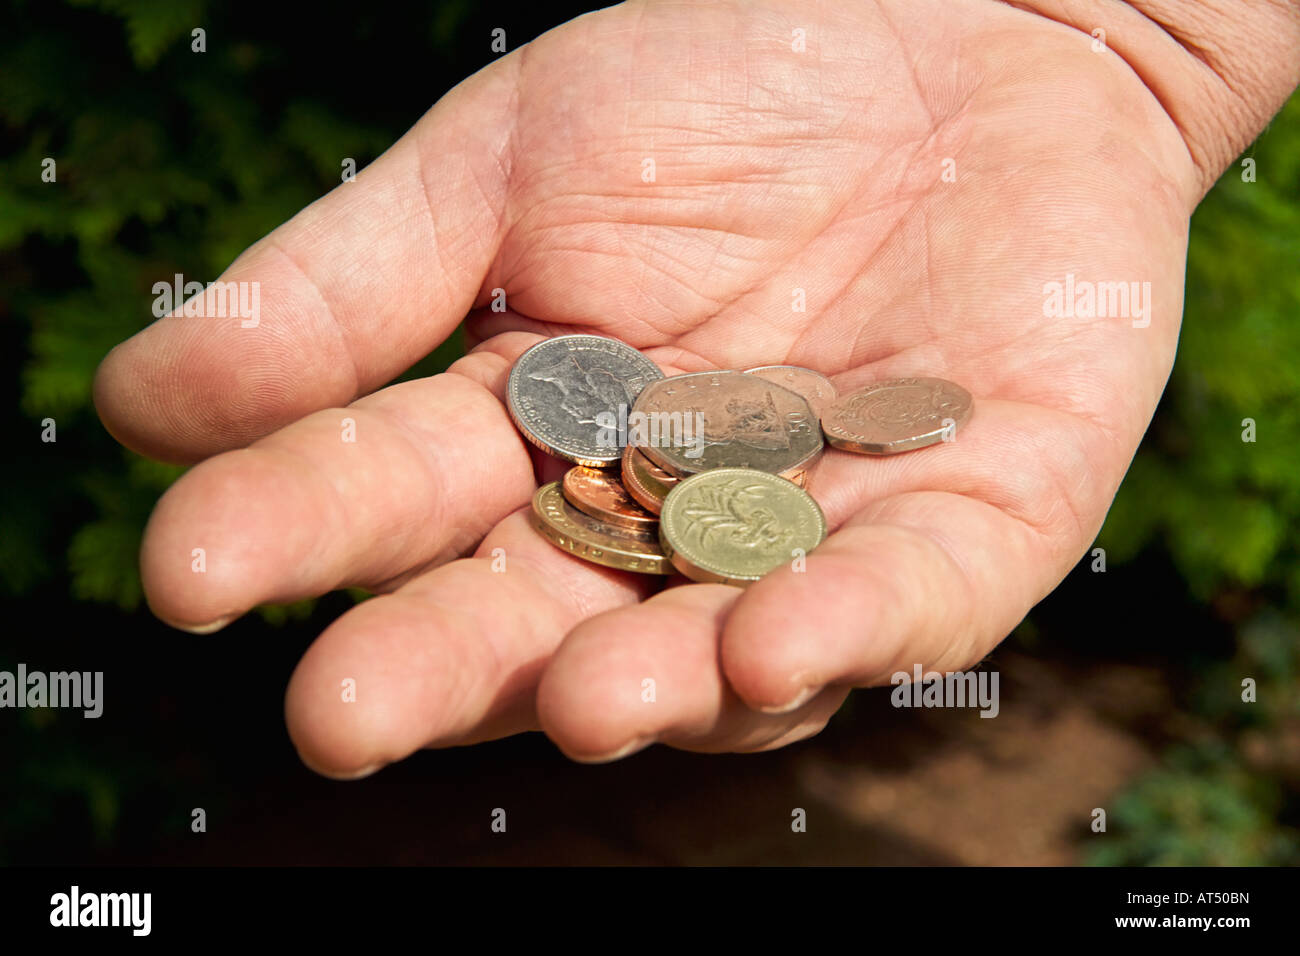 Close-up mans hand holding collection de pièces de monnaie britanniques Banque D'Images